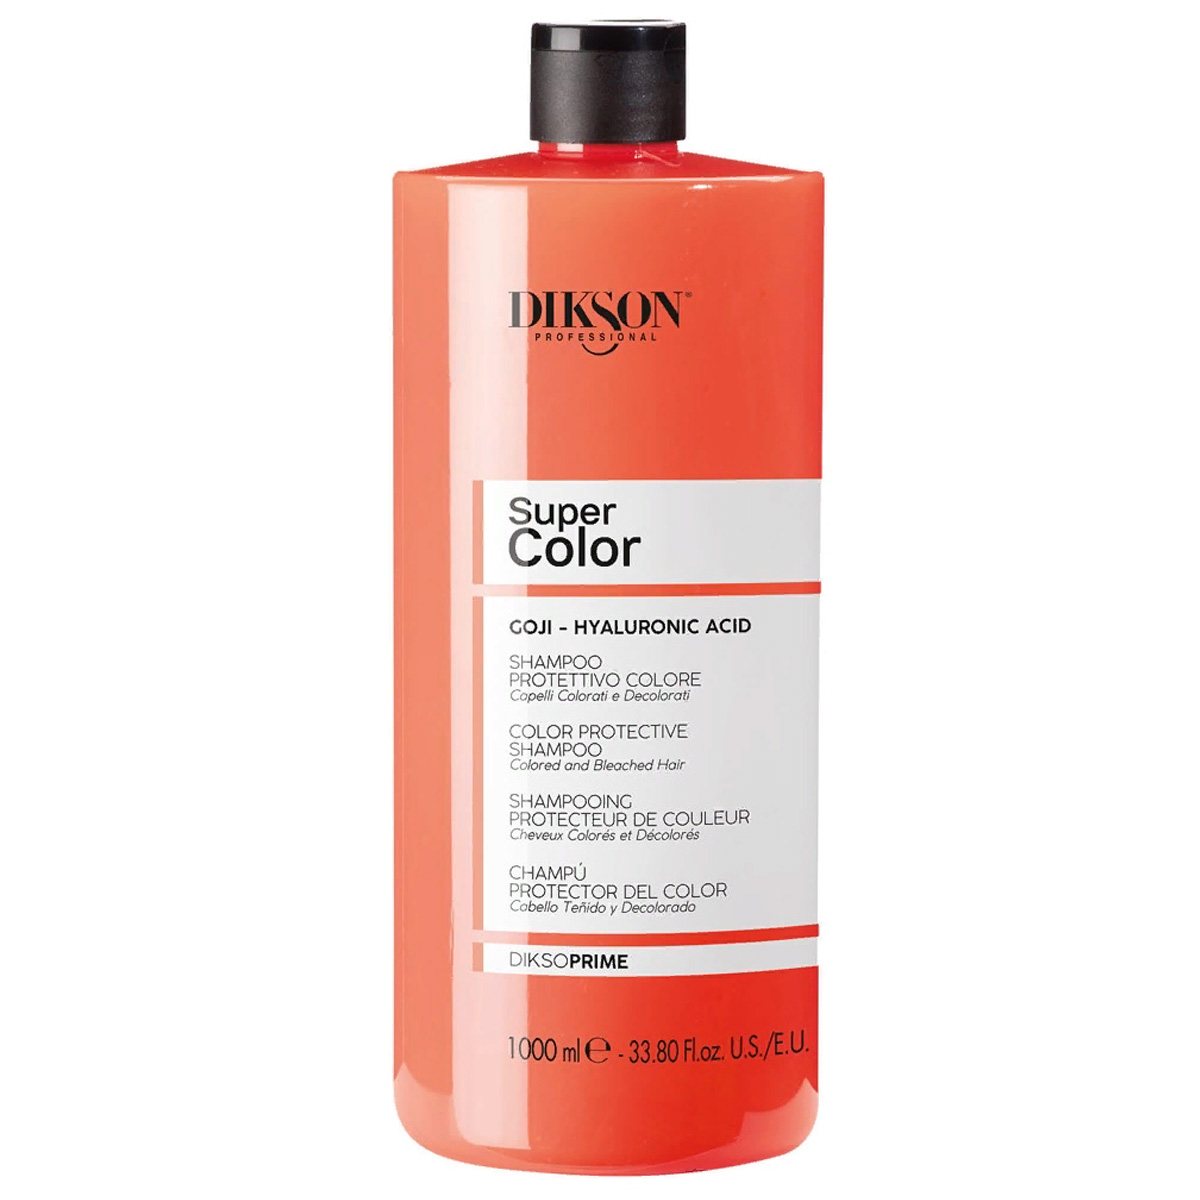 Dikson Шампунь с экстрактом ягод годжи для окрашенных волос Shampoo Color Protective, 1000 мл (Dikson, DiksoPrime)